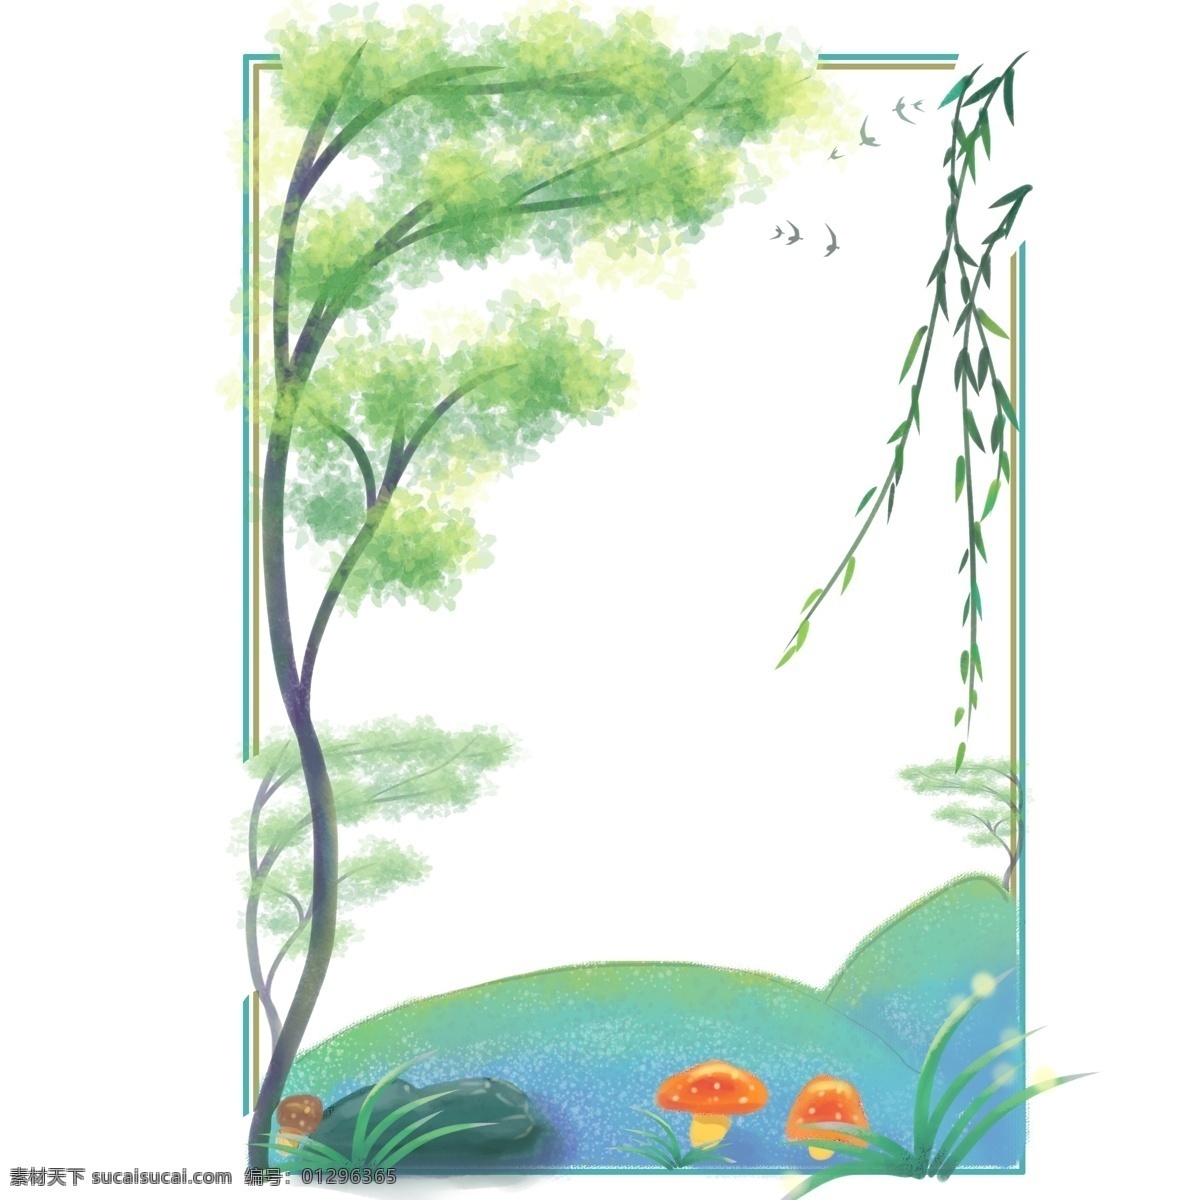 卡通 手绘 春季 植物 边框 卡通手绘 春天 植物边框 嫩芽 绿色叶子 春季绿色柳条 绿色树 树枝 小草 蘑菇